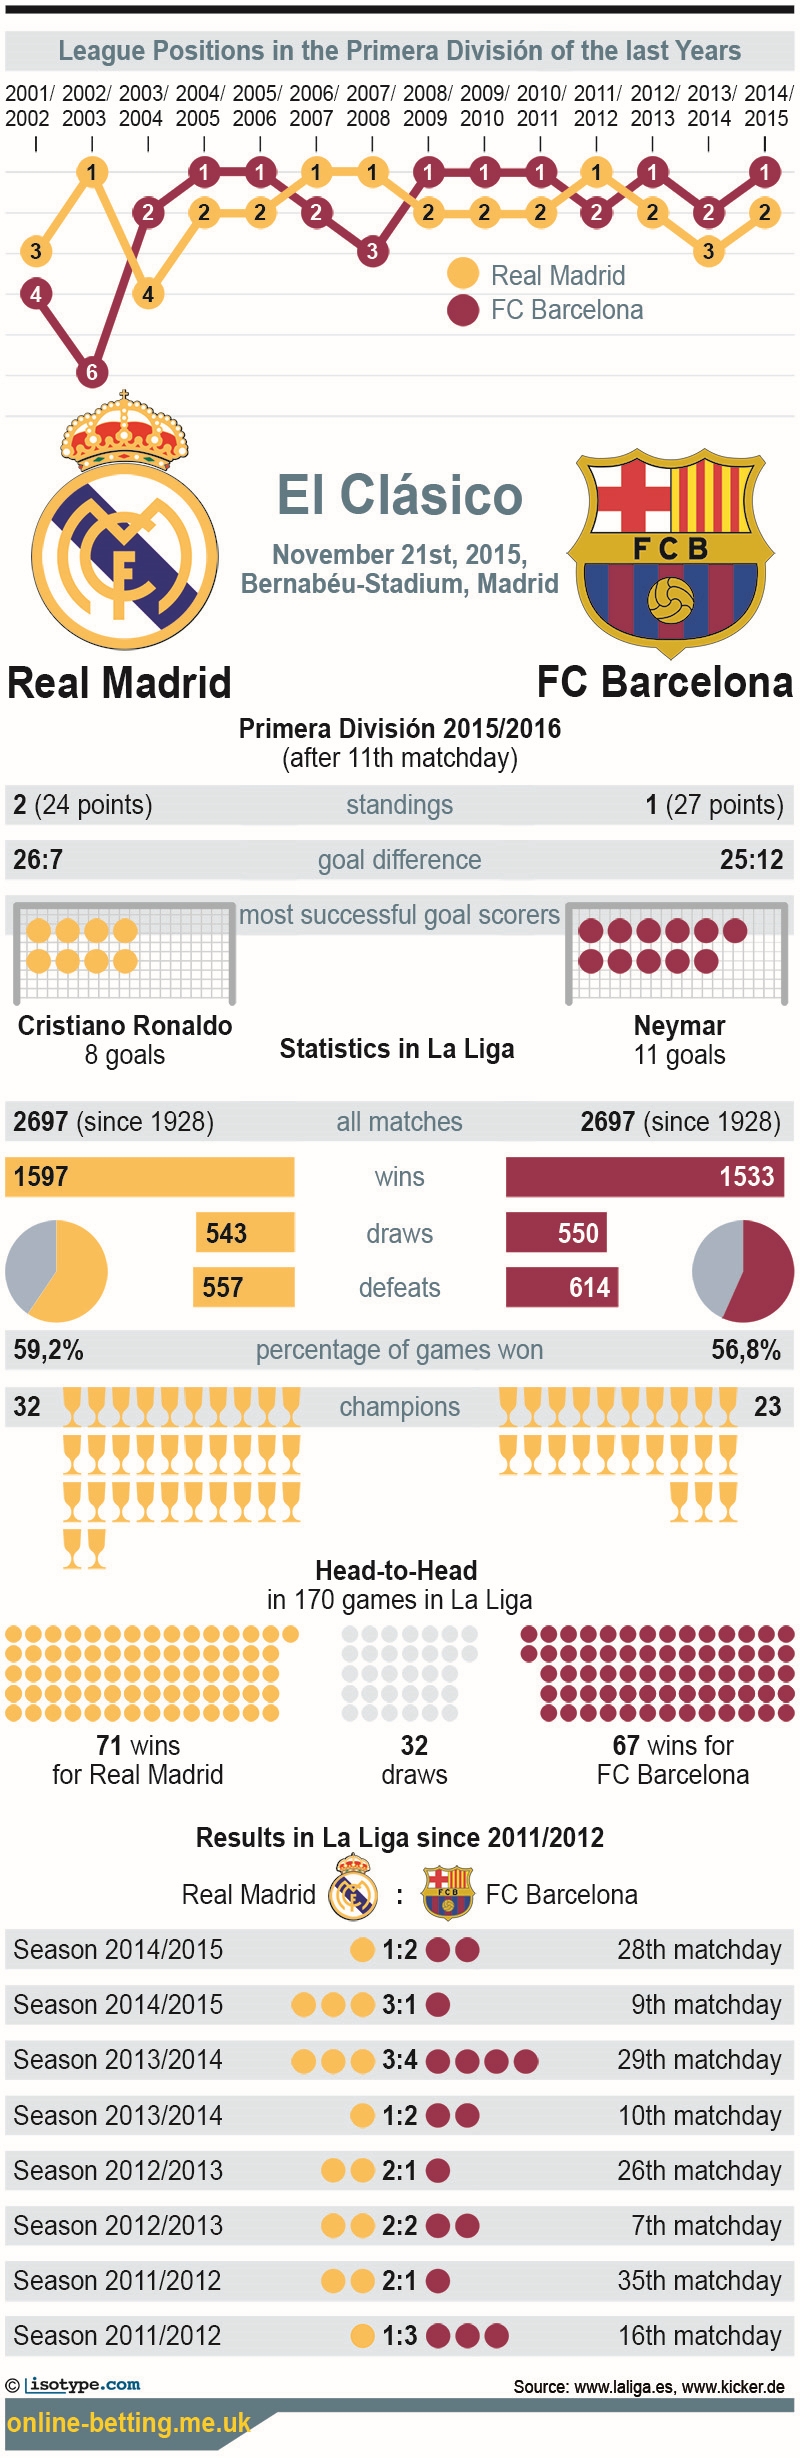 El Clasico 2015 Infographic